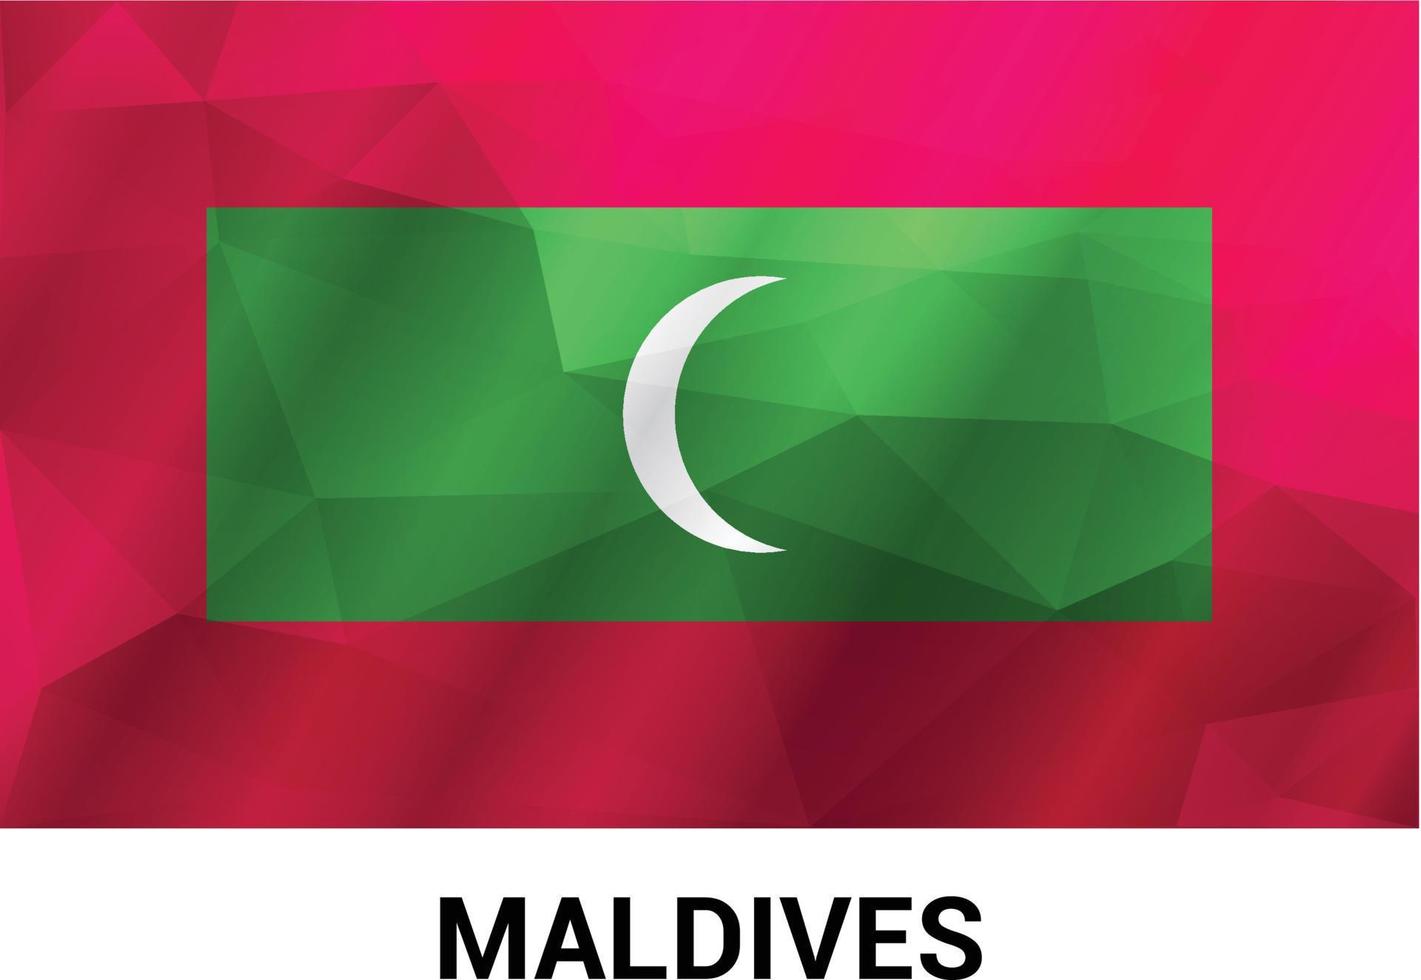 Maldive bandiera design vettore